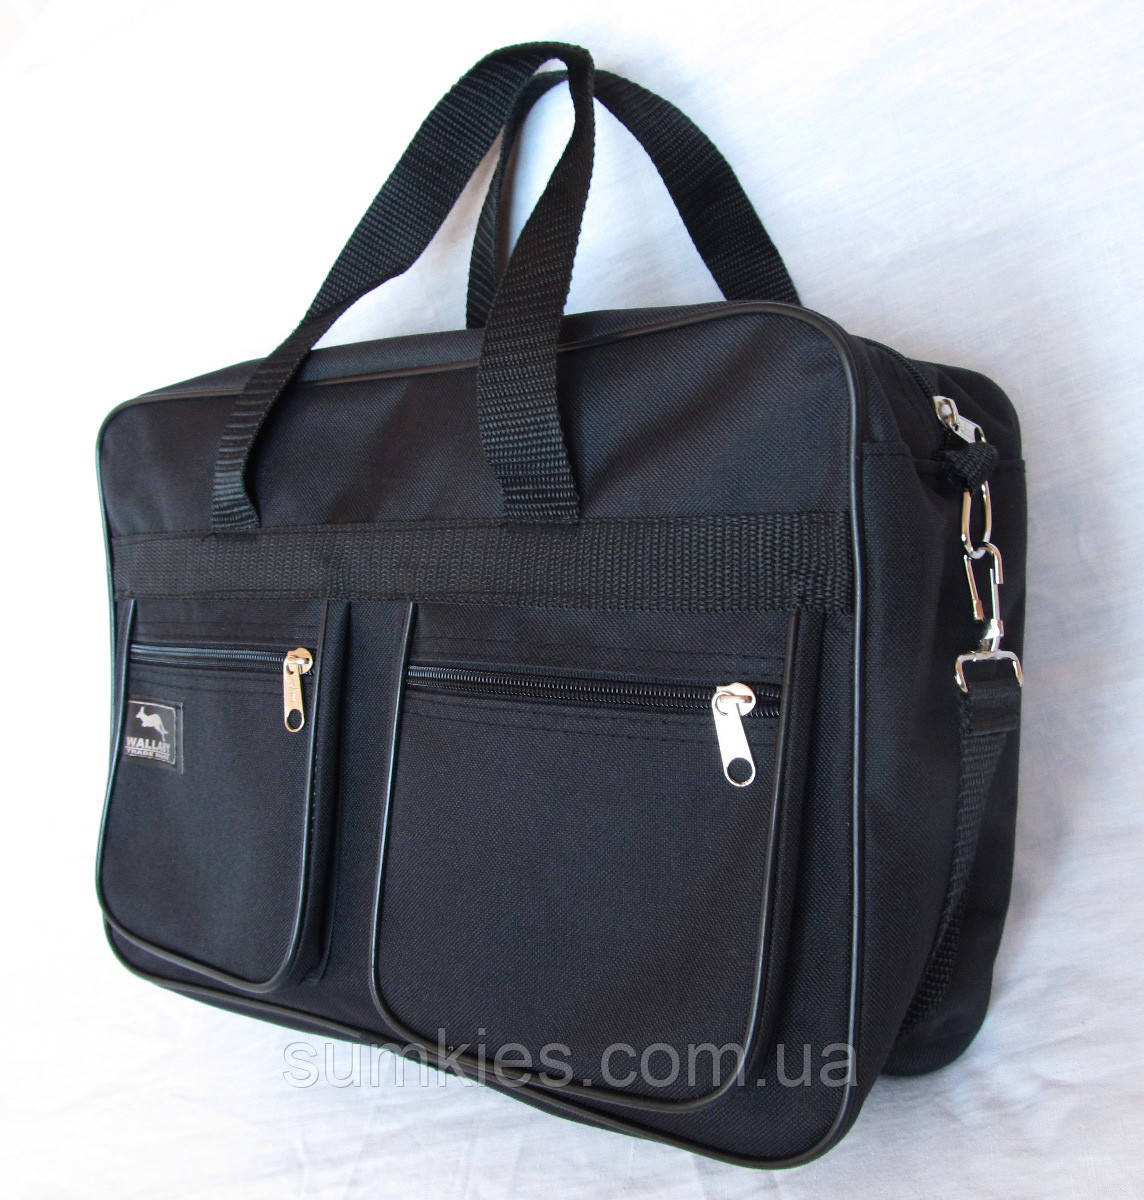 Чоловіча сумка es2630 чорна через плече папка портфель А4+ 38х26см